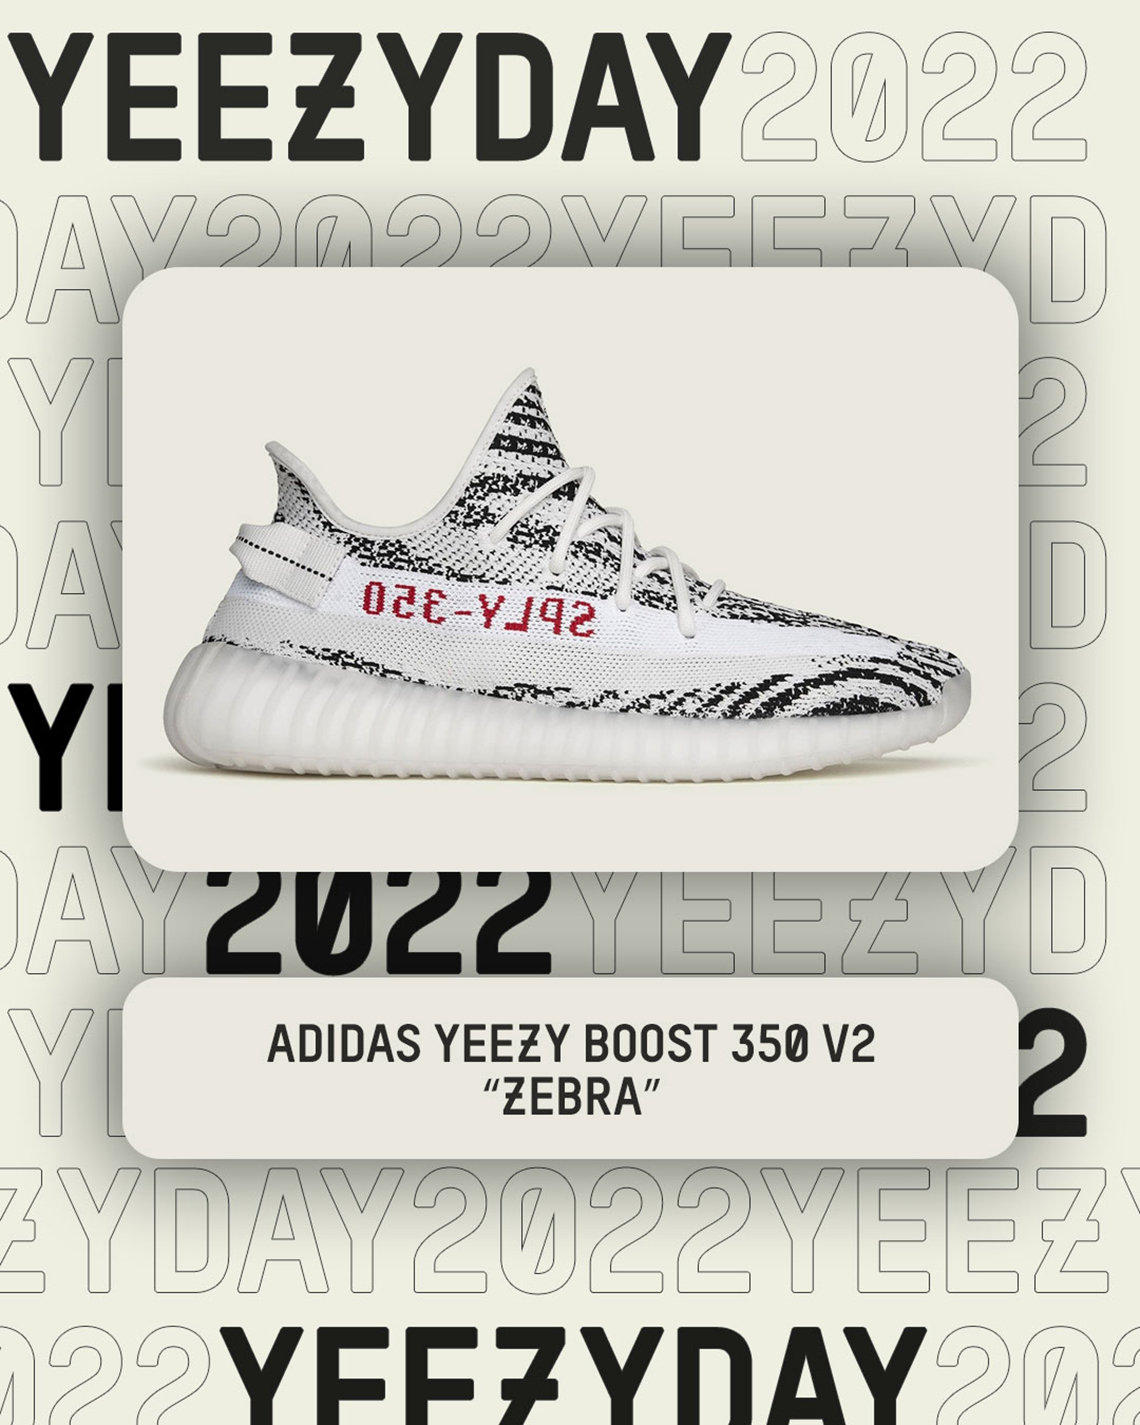 Yeezy Day 2022 adidas solar hu pack V2 Zebra